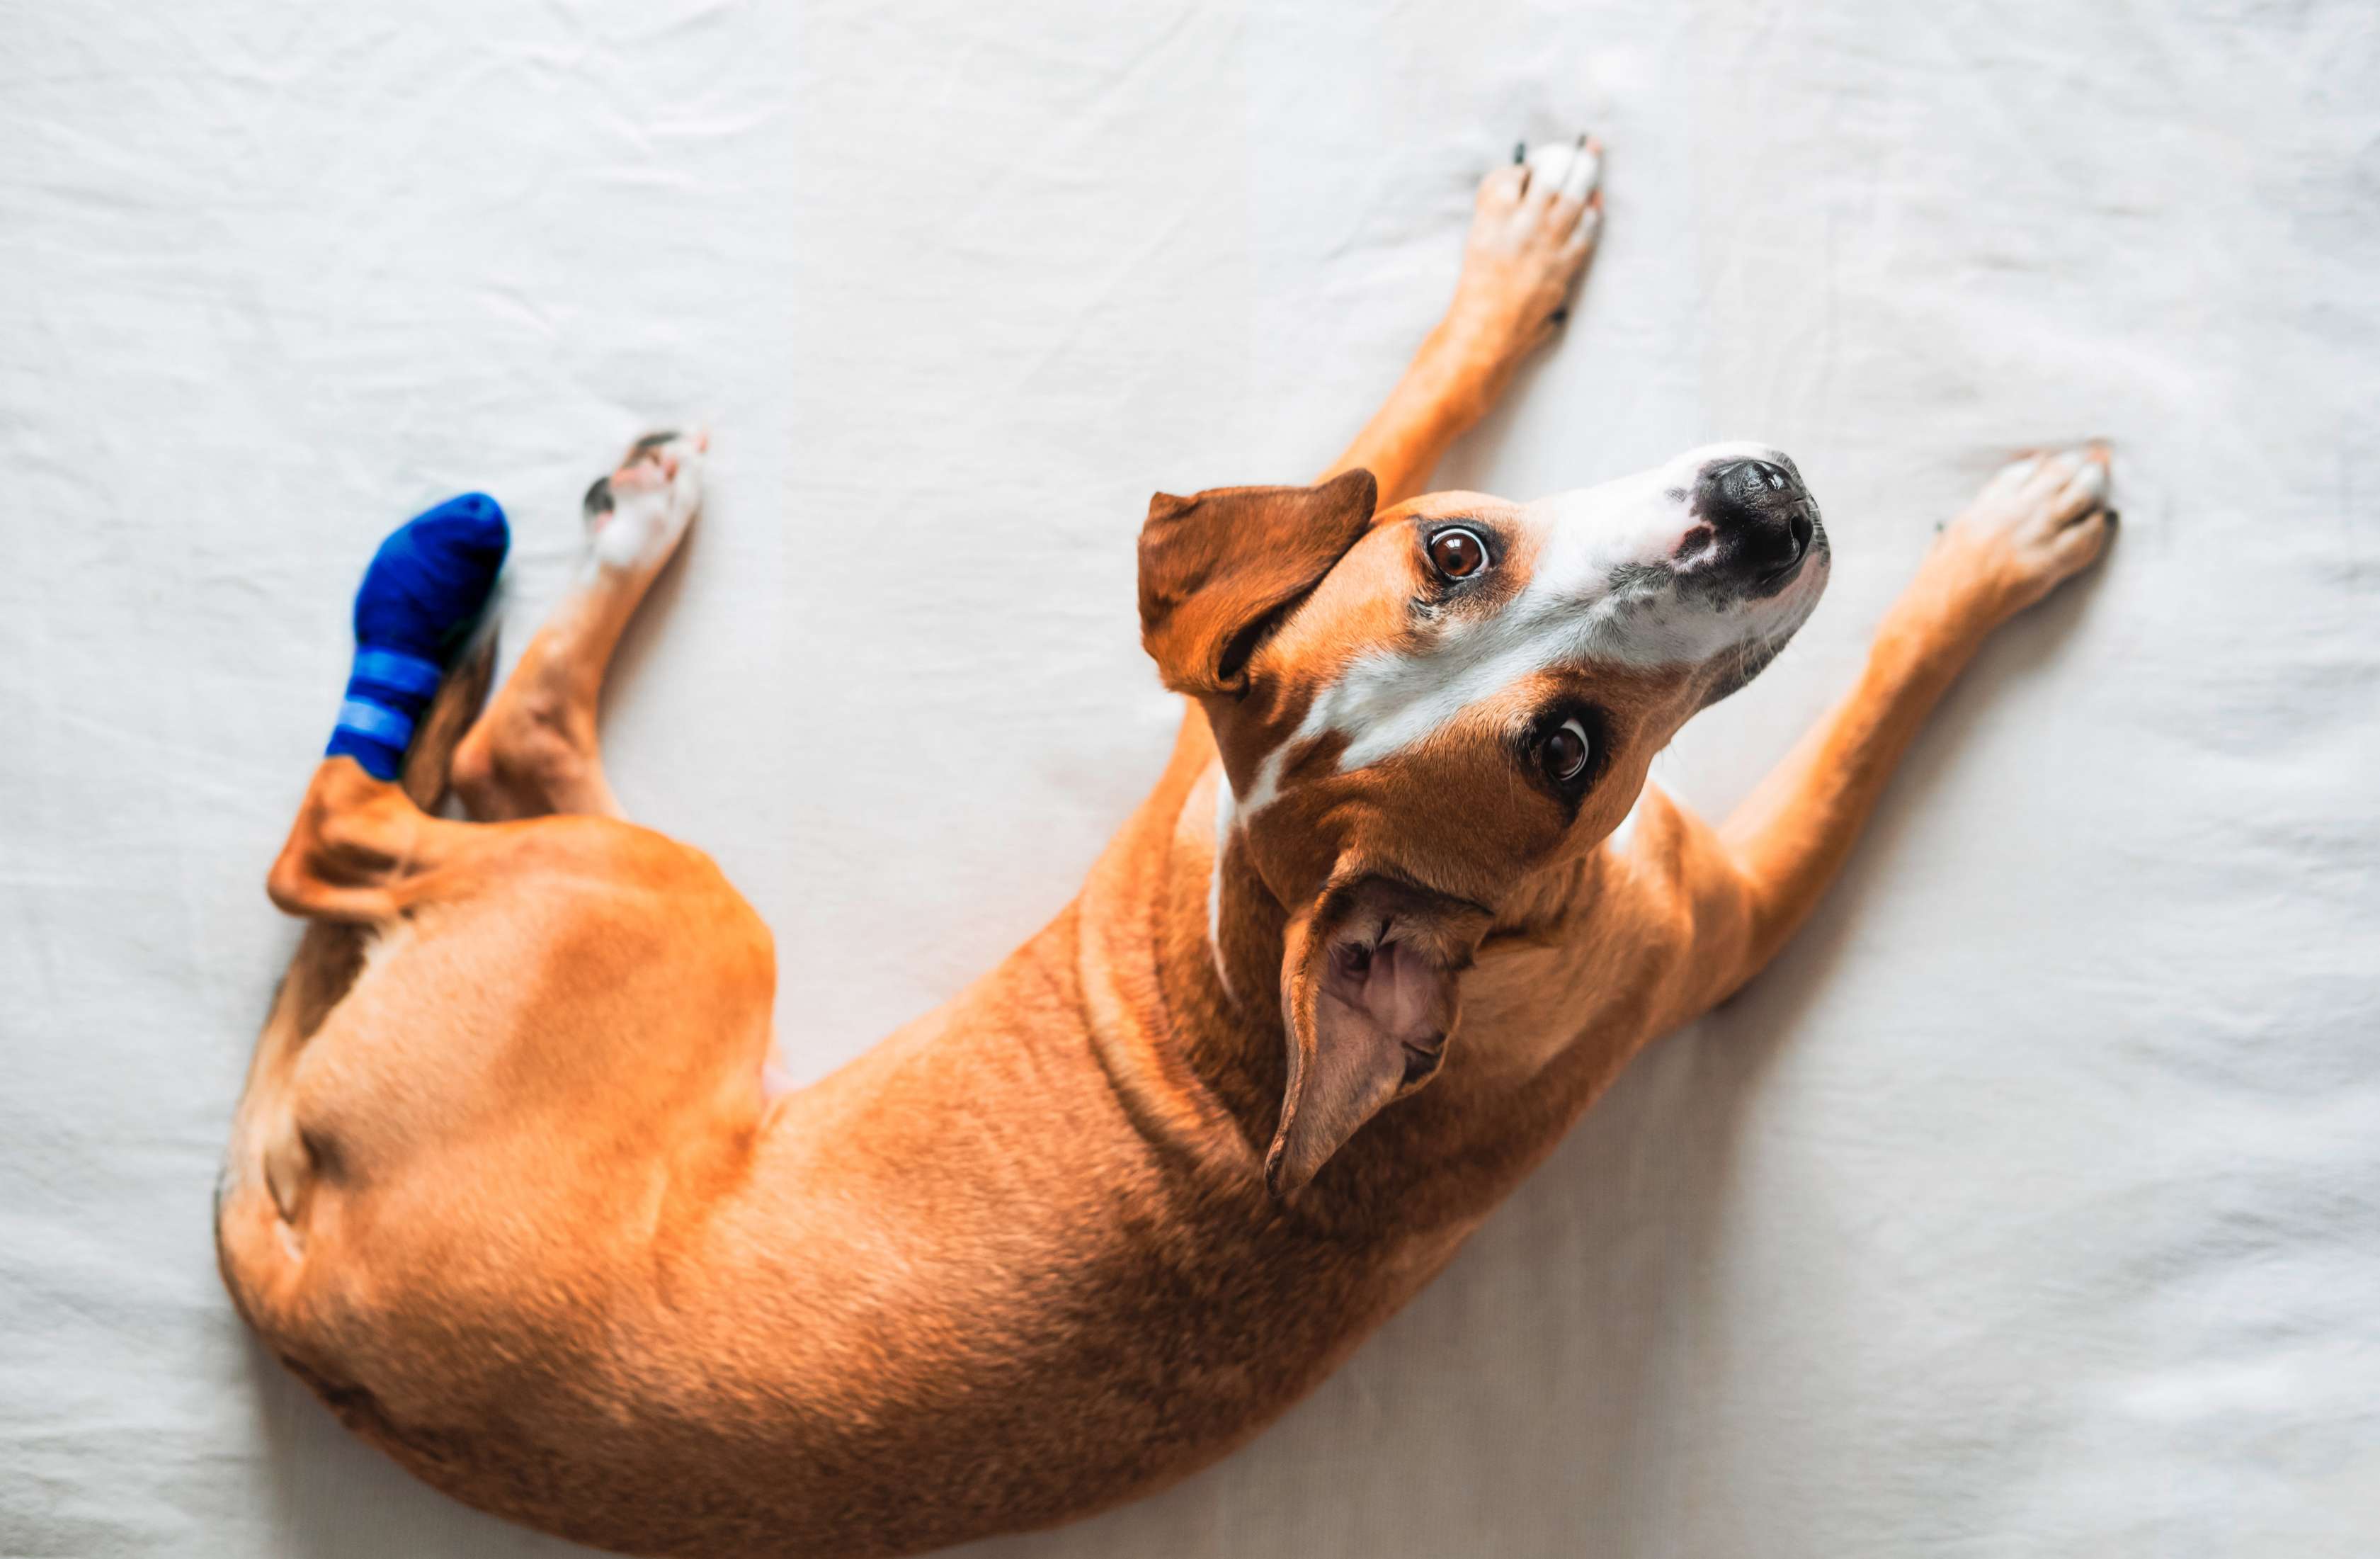 Hundekrankenversicherung: Ein hellbrauner Hund liegt mit einem Verband auf einer Decke